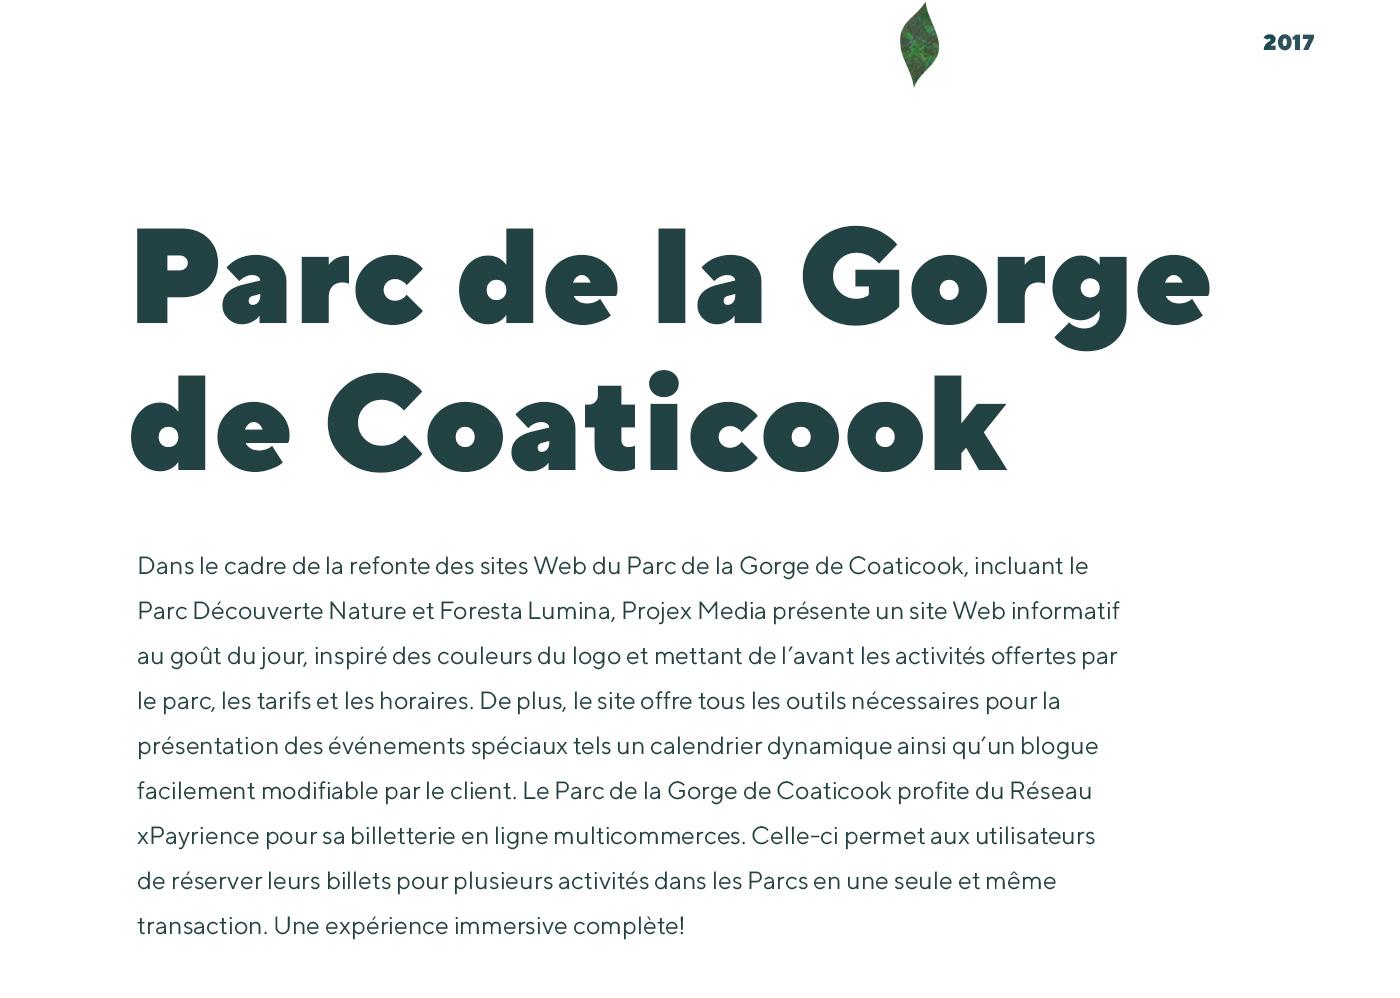 Conception d'un site web bilingue pour le Parc de la Gorge de Coaticook - attraits touristiques de Coaticook / 2017 - Réalisation signée Projex Media